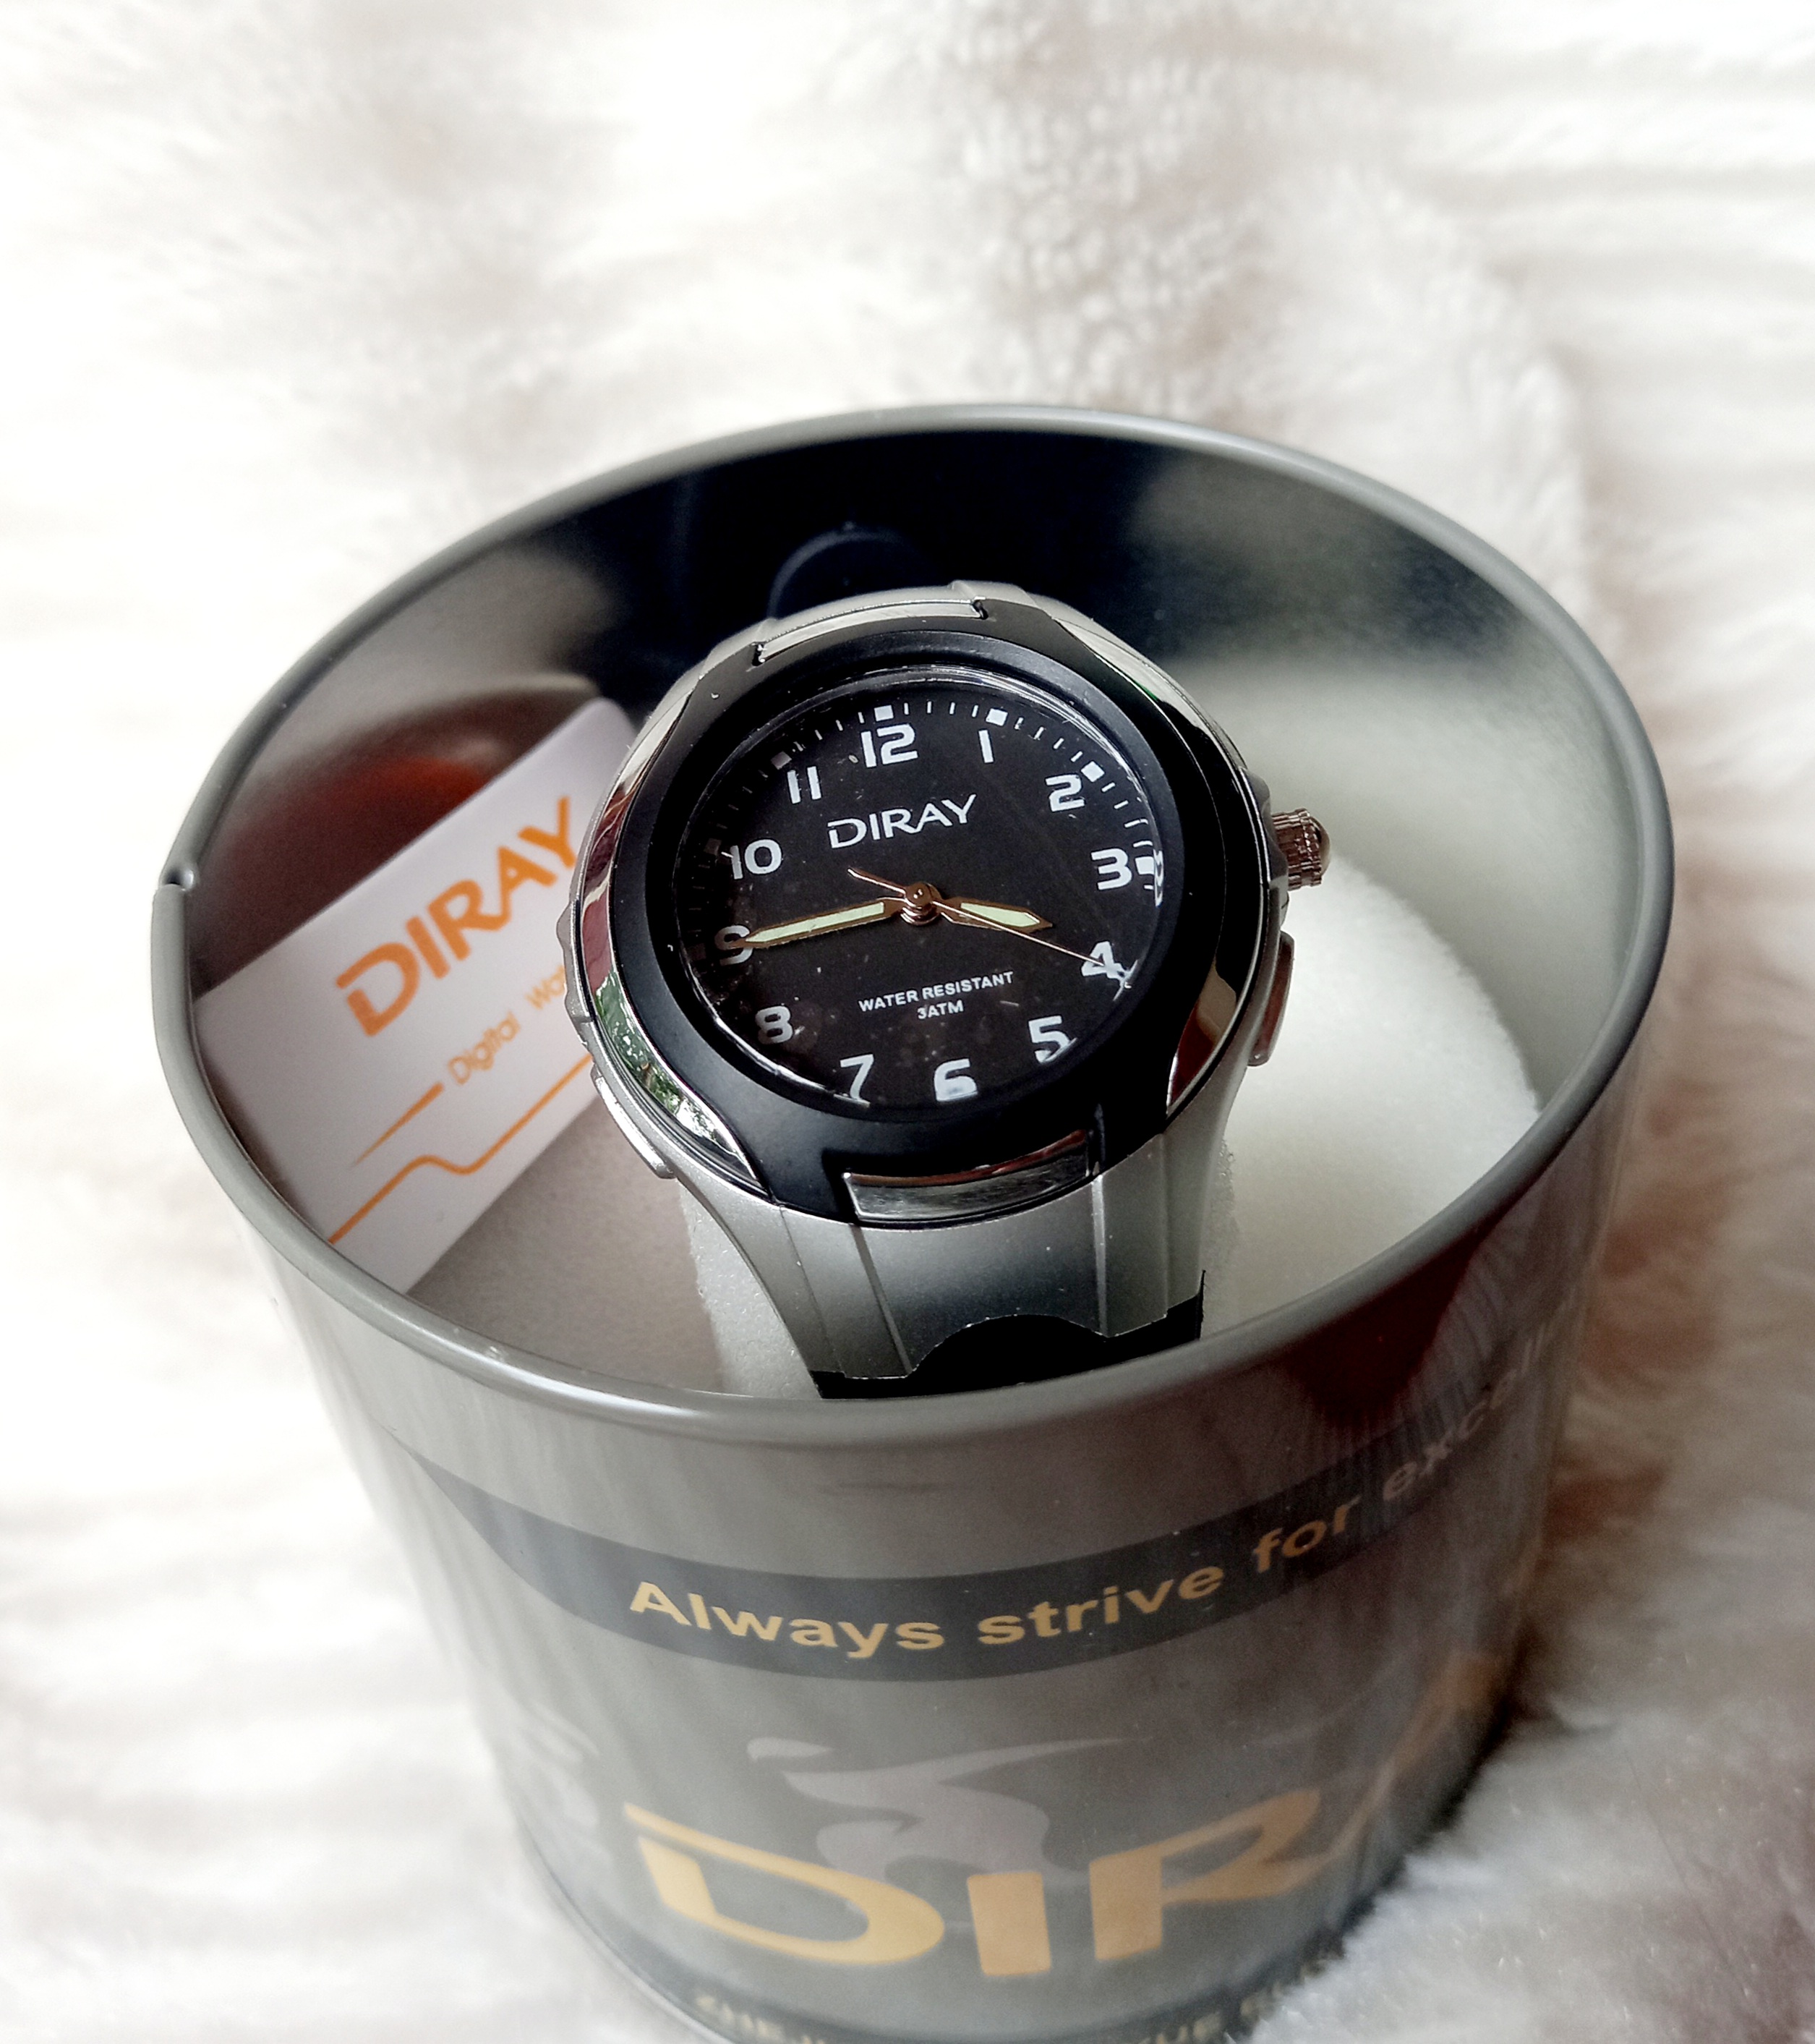 Đồng hồ trẻ em Diray chạy kim hàng chí.nh hãng chống nước, quai silicon màu đen